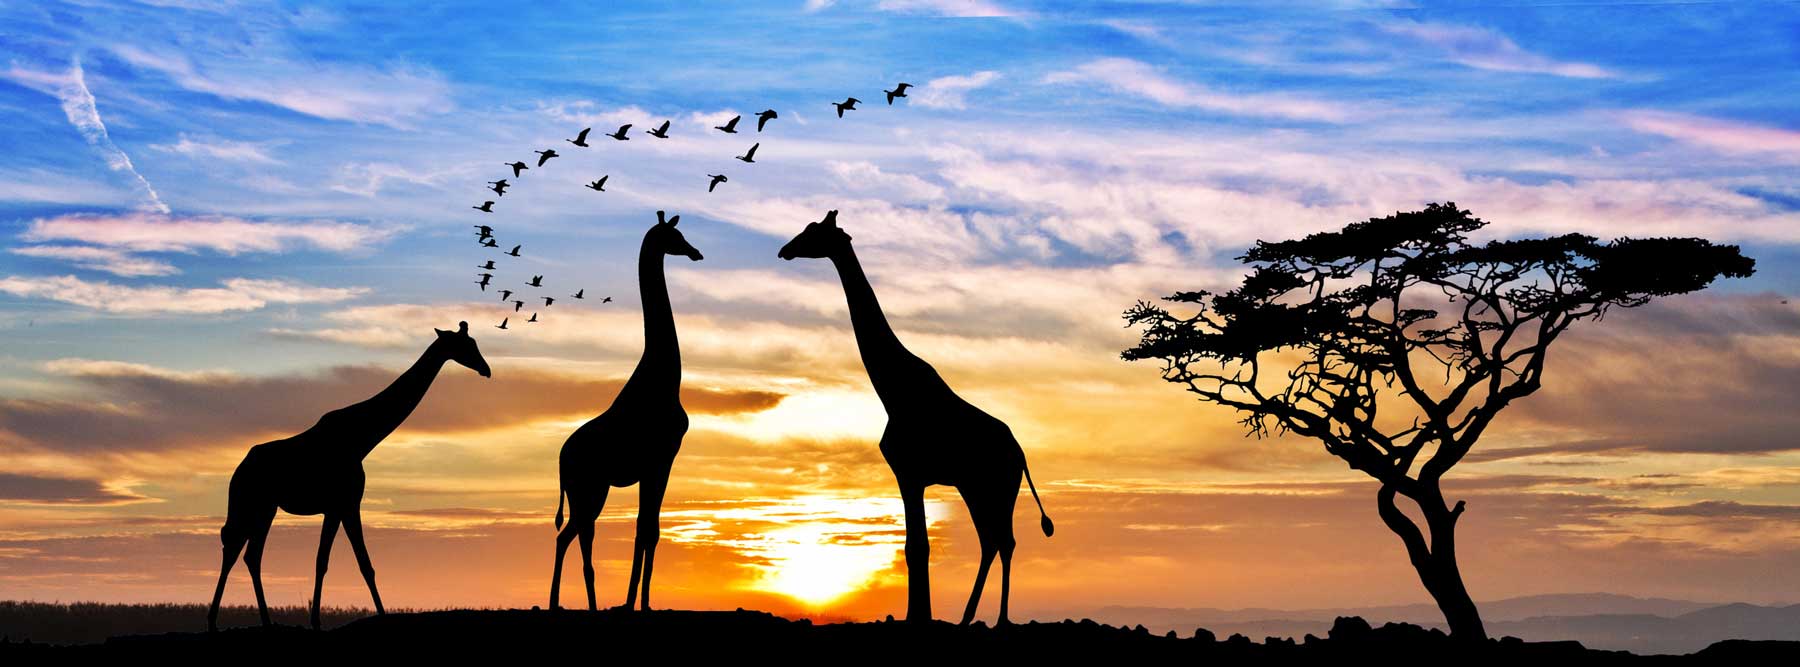 Giraffes in Safari